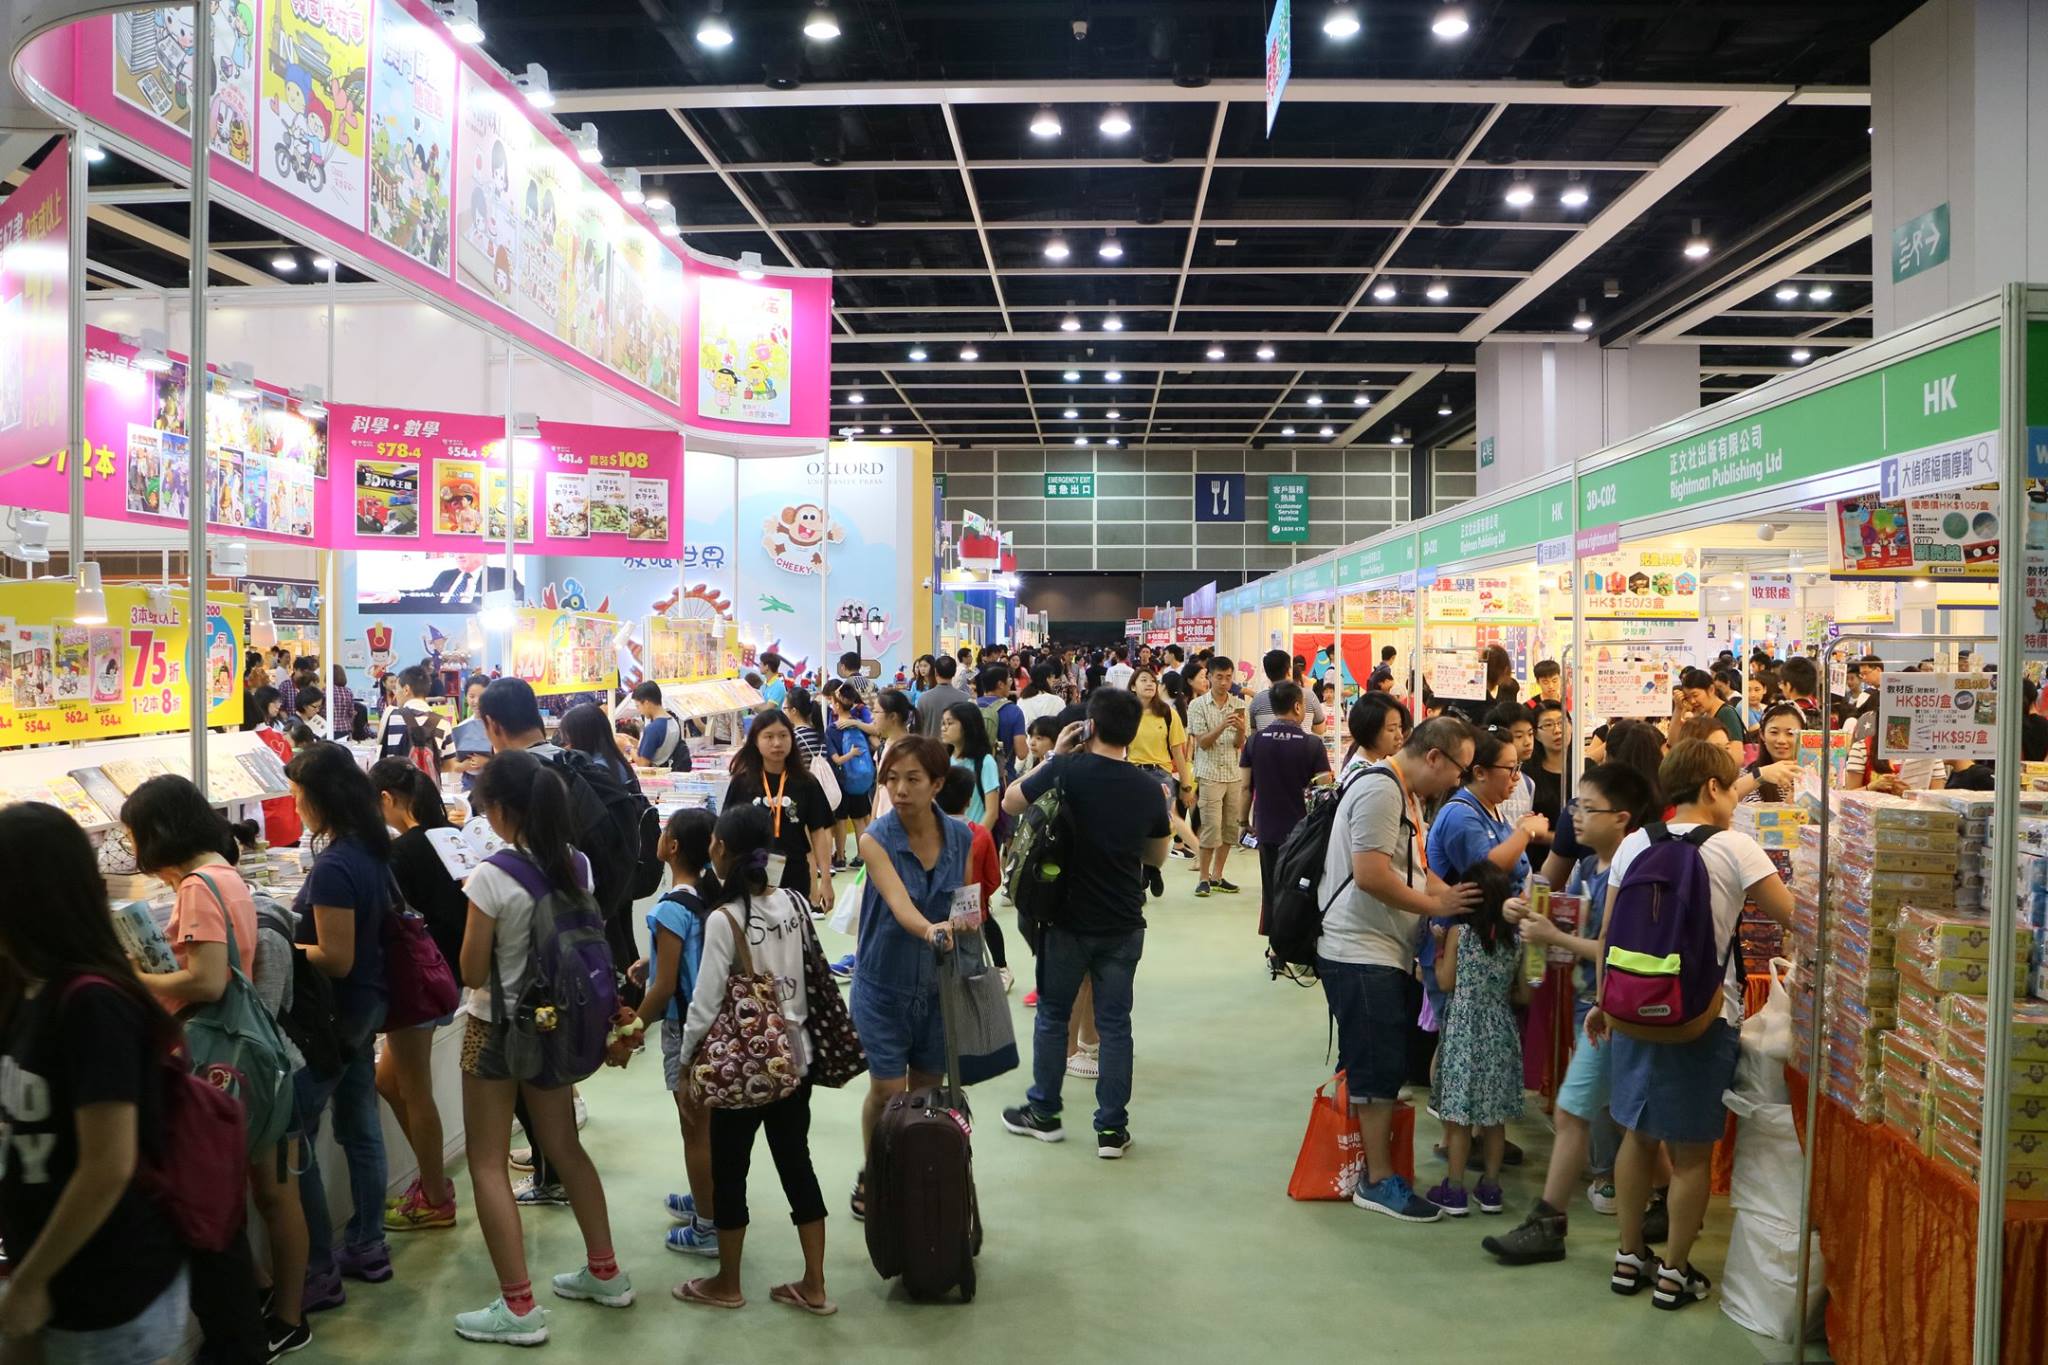 Photo: Hong Kong Convention and Exhibition Centre via Facebook